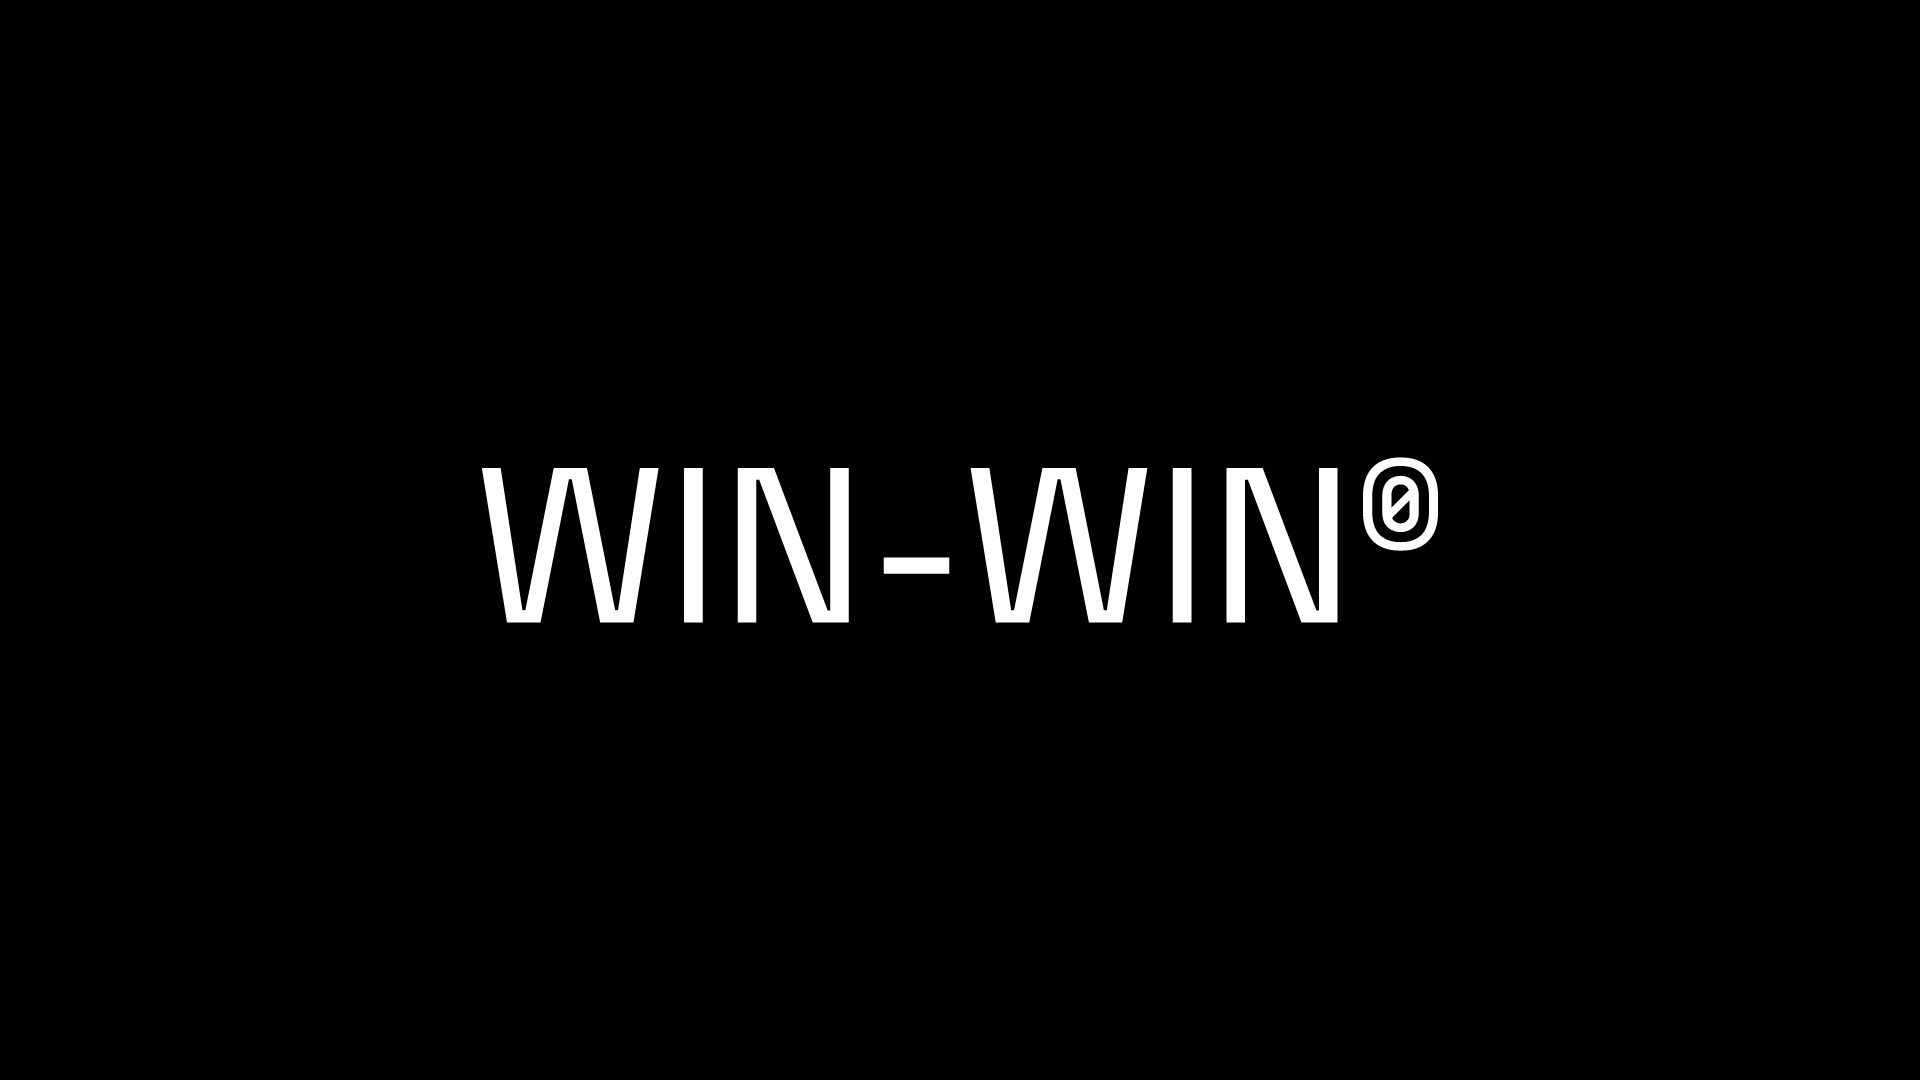 CC0/Public Domain = Win-Win Game